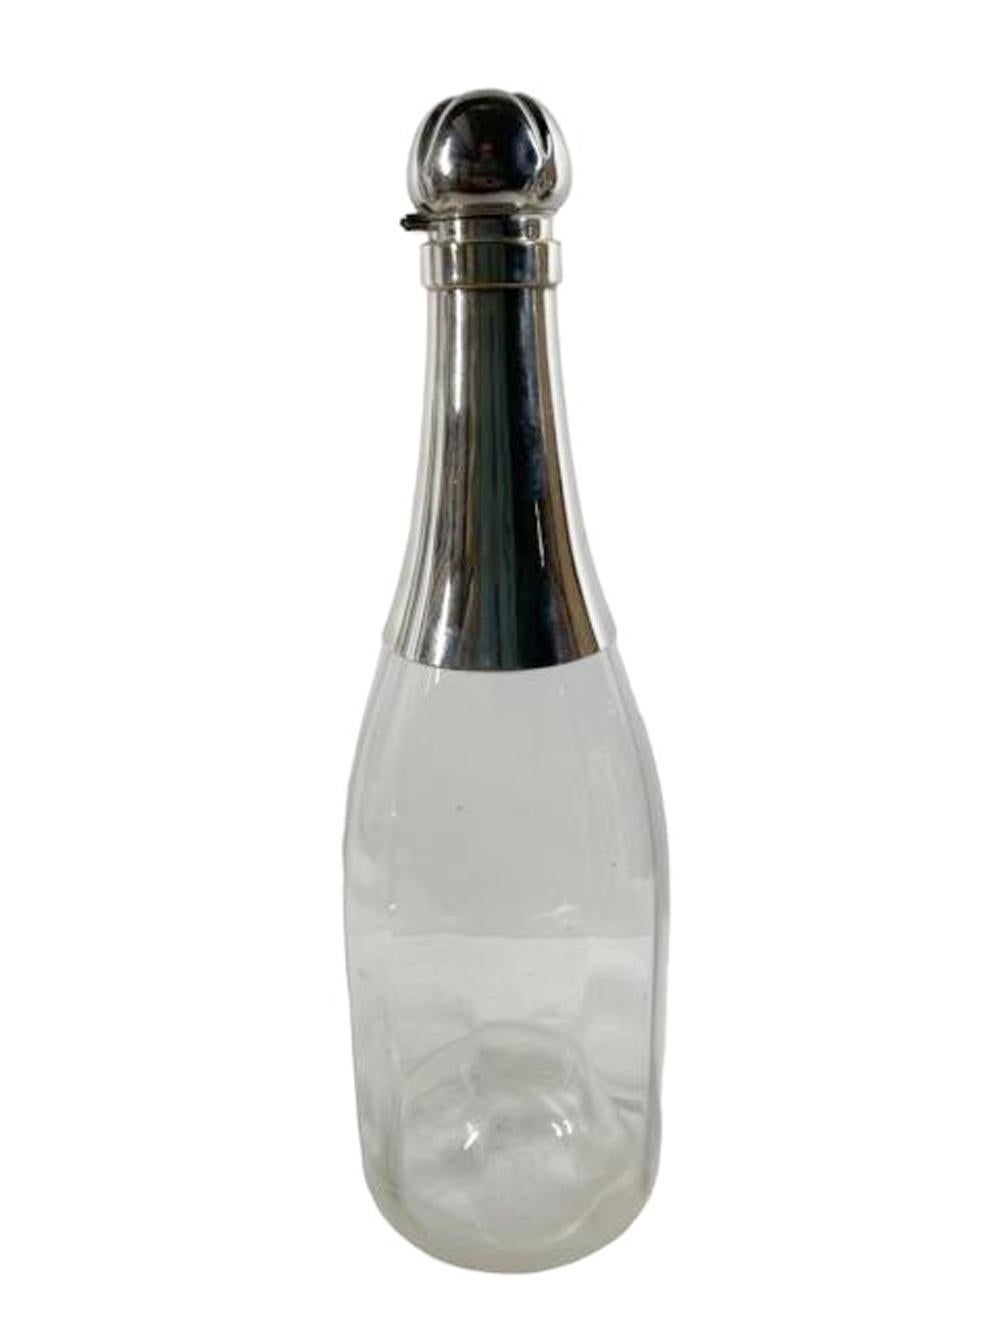 Grande carafe Art Déco en forme de bouteille de champagne en verre clair optiquement strié, montée avec un col en métal argenté et un bouchon à charnière en forme de bouchon de champagne.